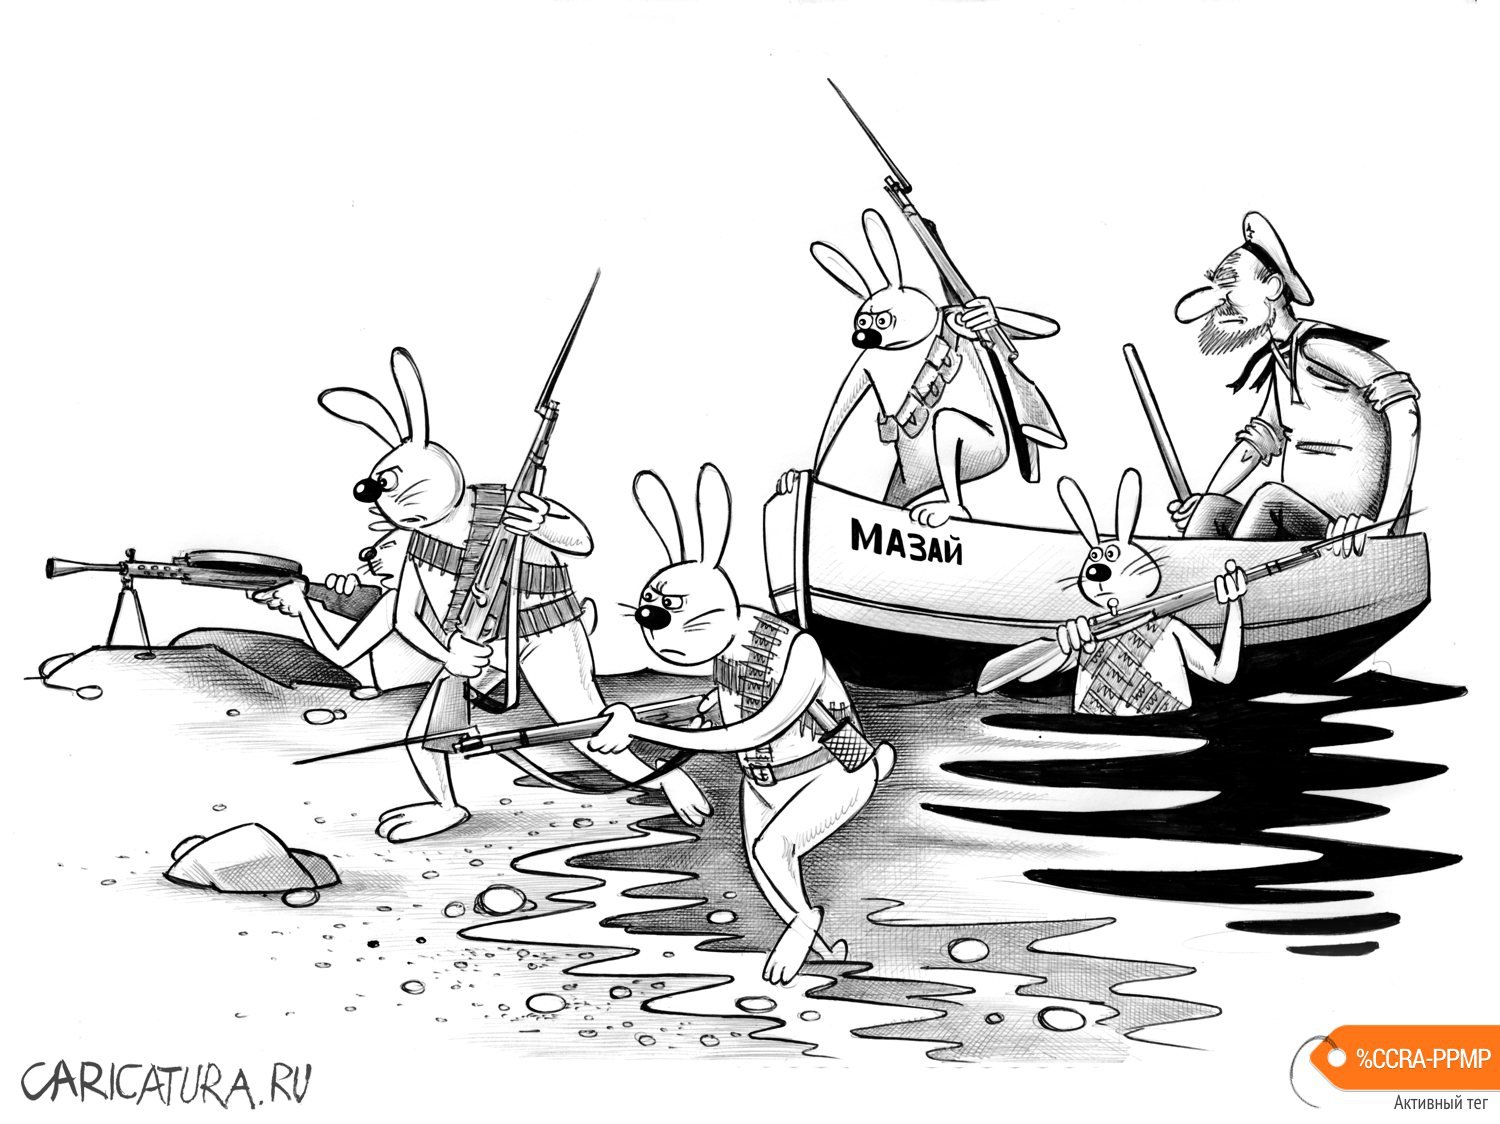 Карикатура "Мазай и зайцы", Сергей Корсун